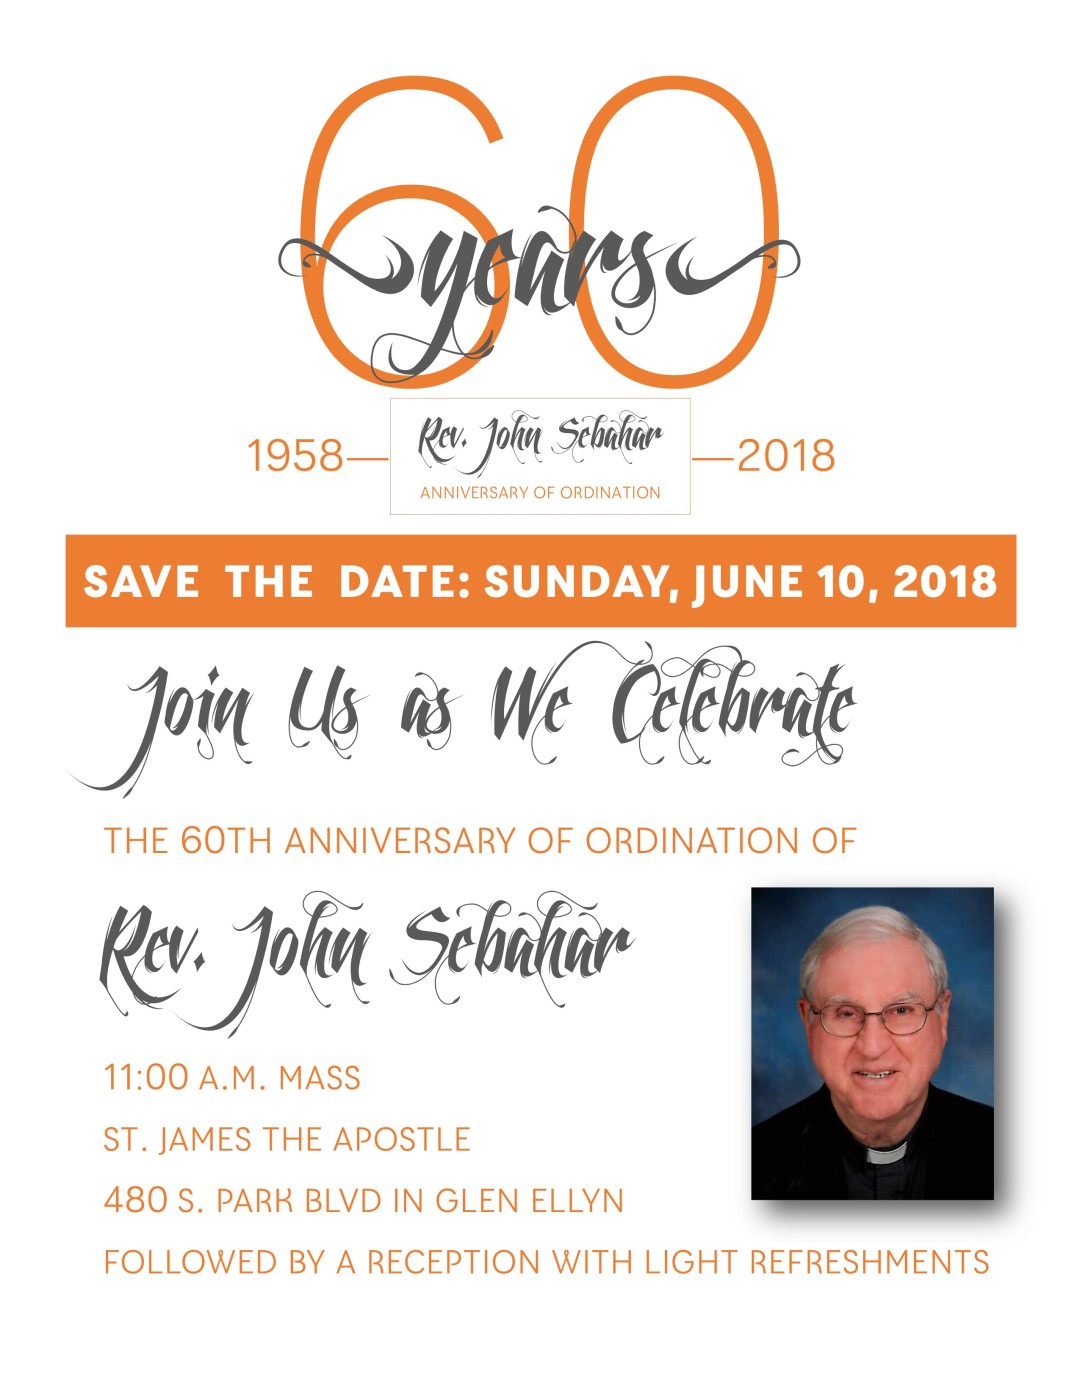 Fr. John Sebahar 60th Anniversary of Ordination